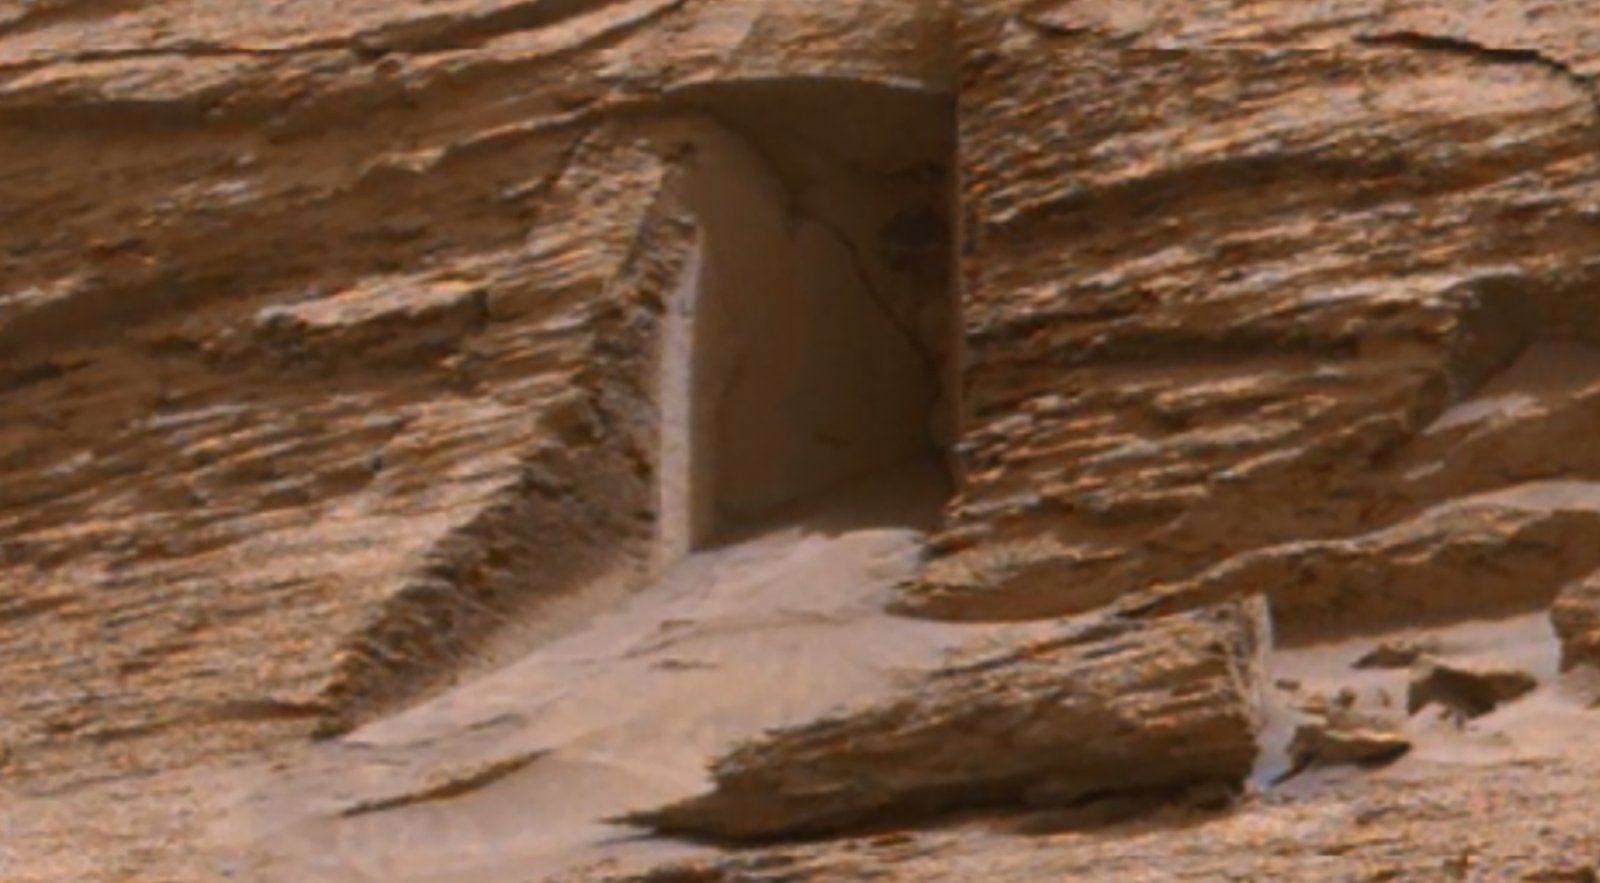 Doorway on Mars